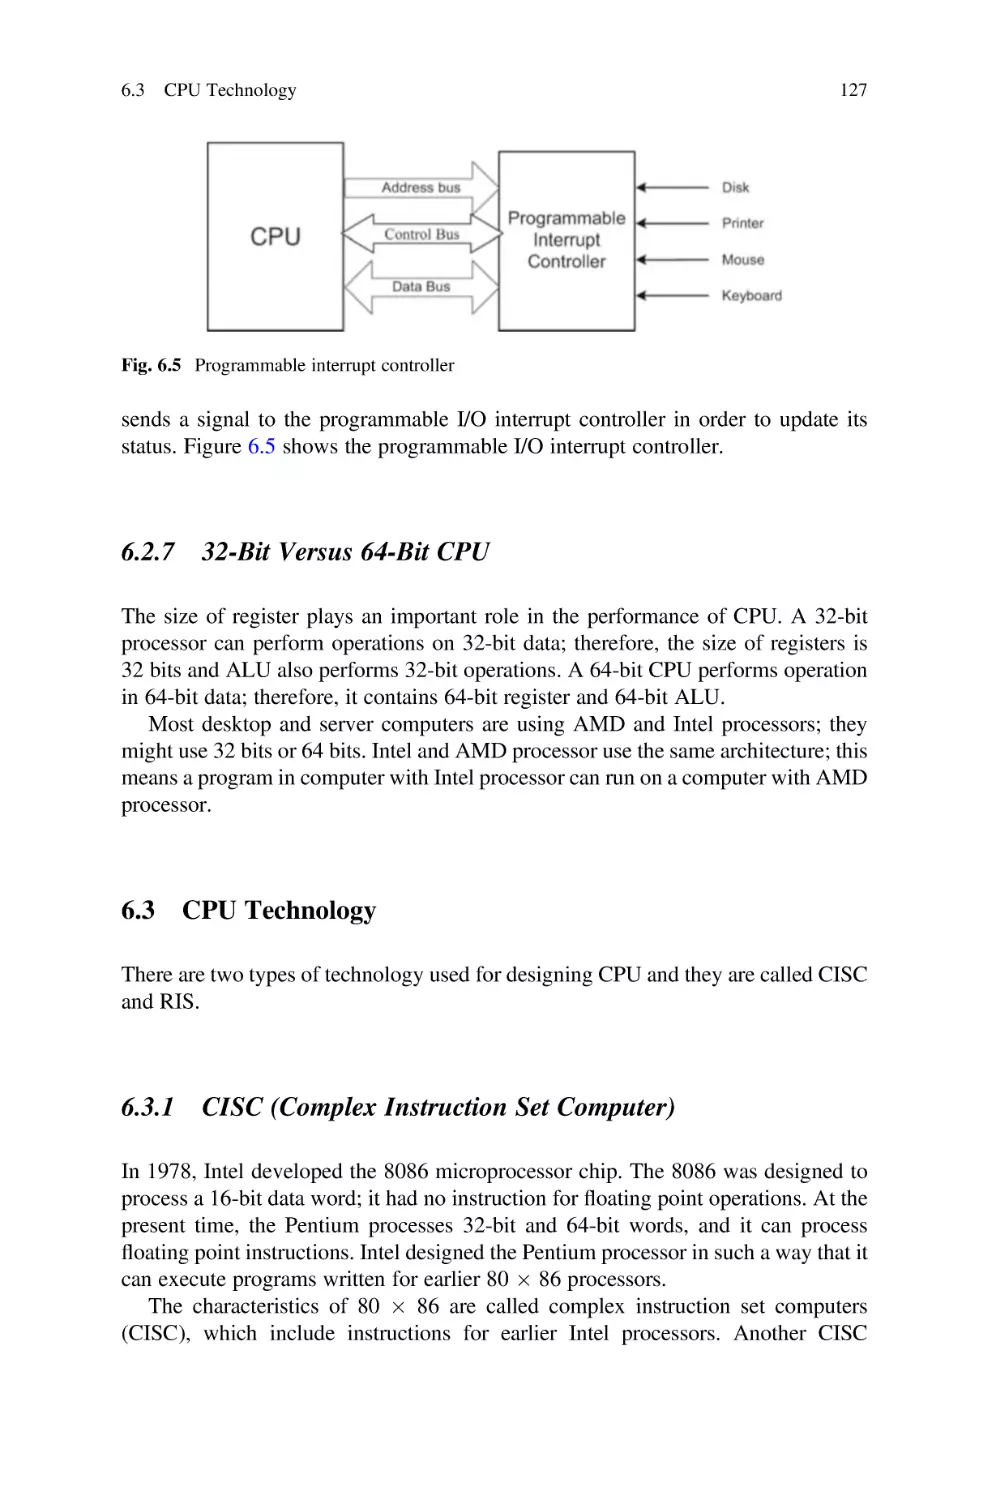 6.2.7 32-Bit Versus 64-Bit CPU
6.3 CPU Technology
6.3.1 CISC (Complex Instruction Set Computer)